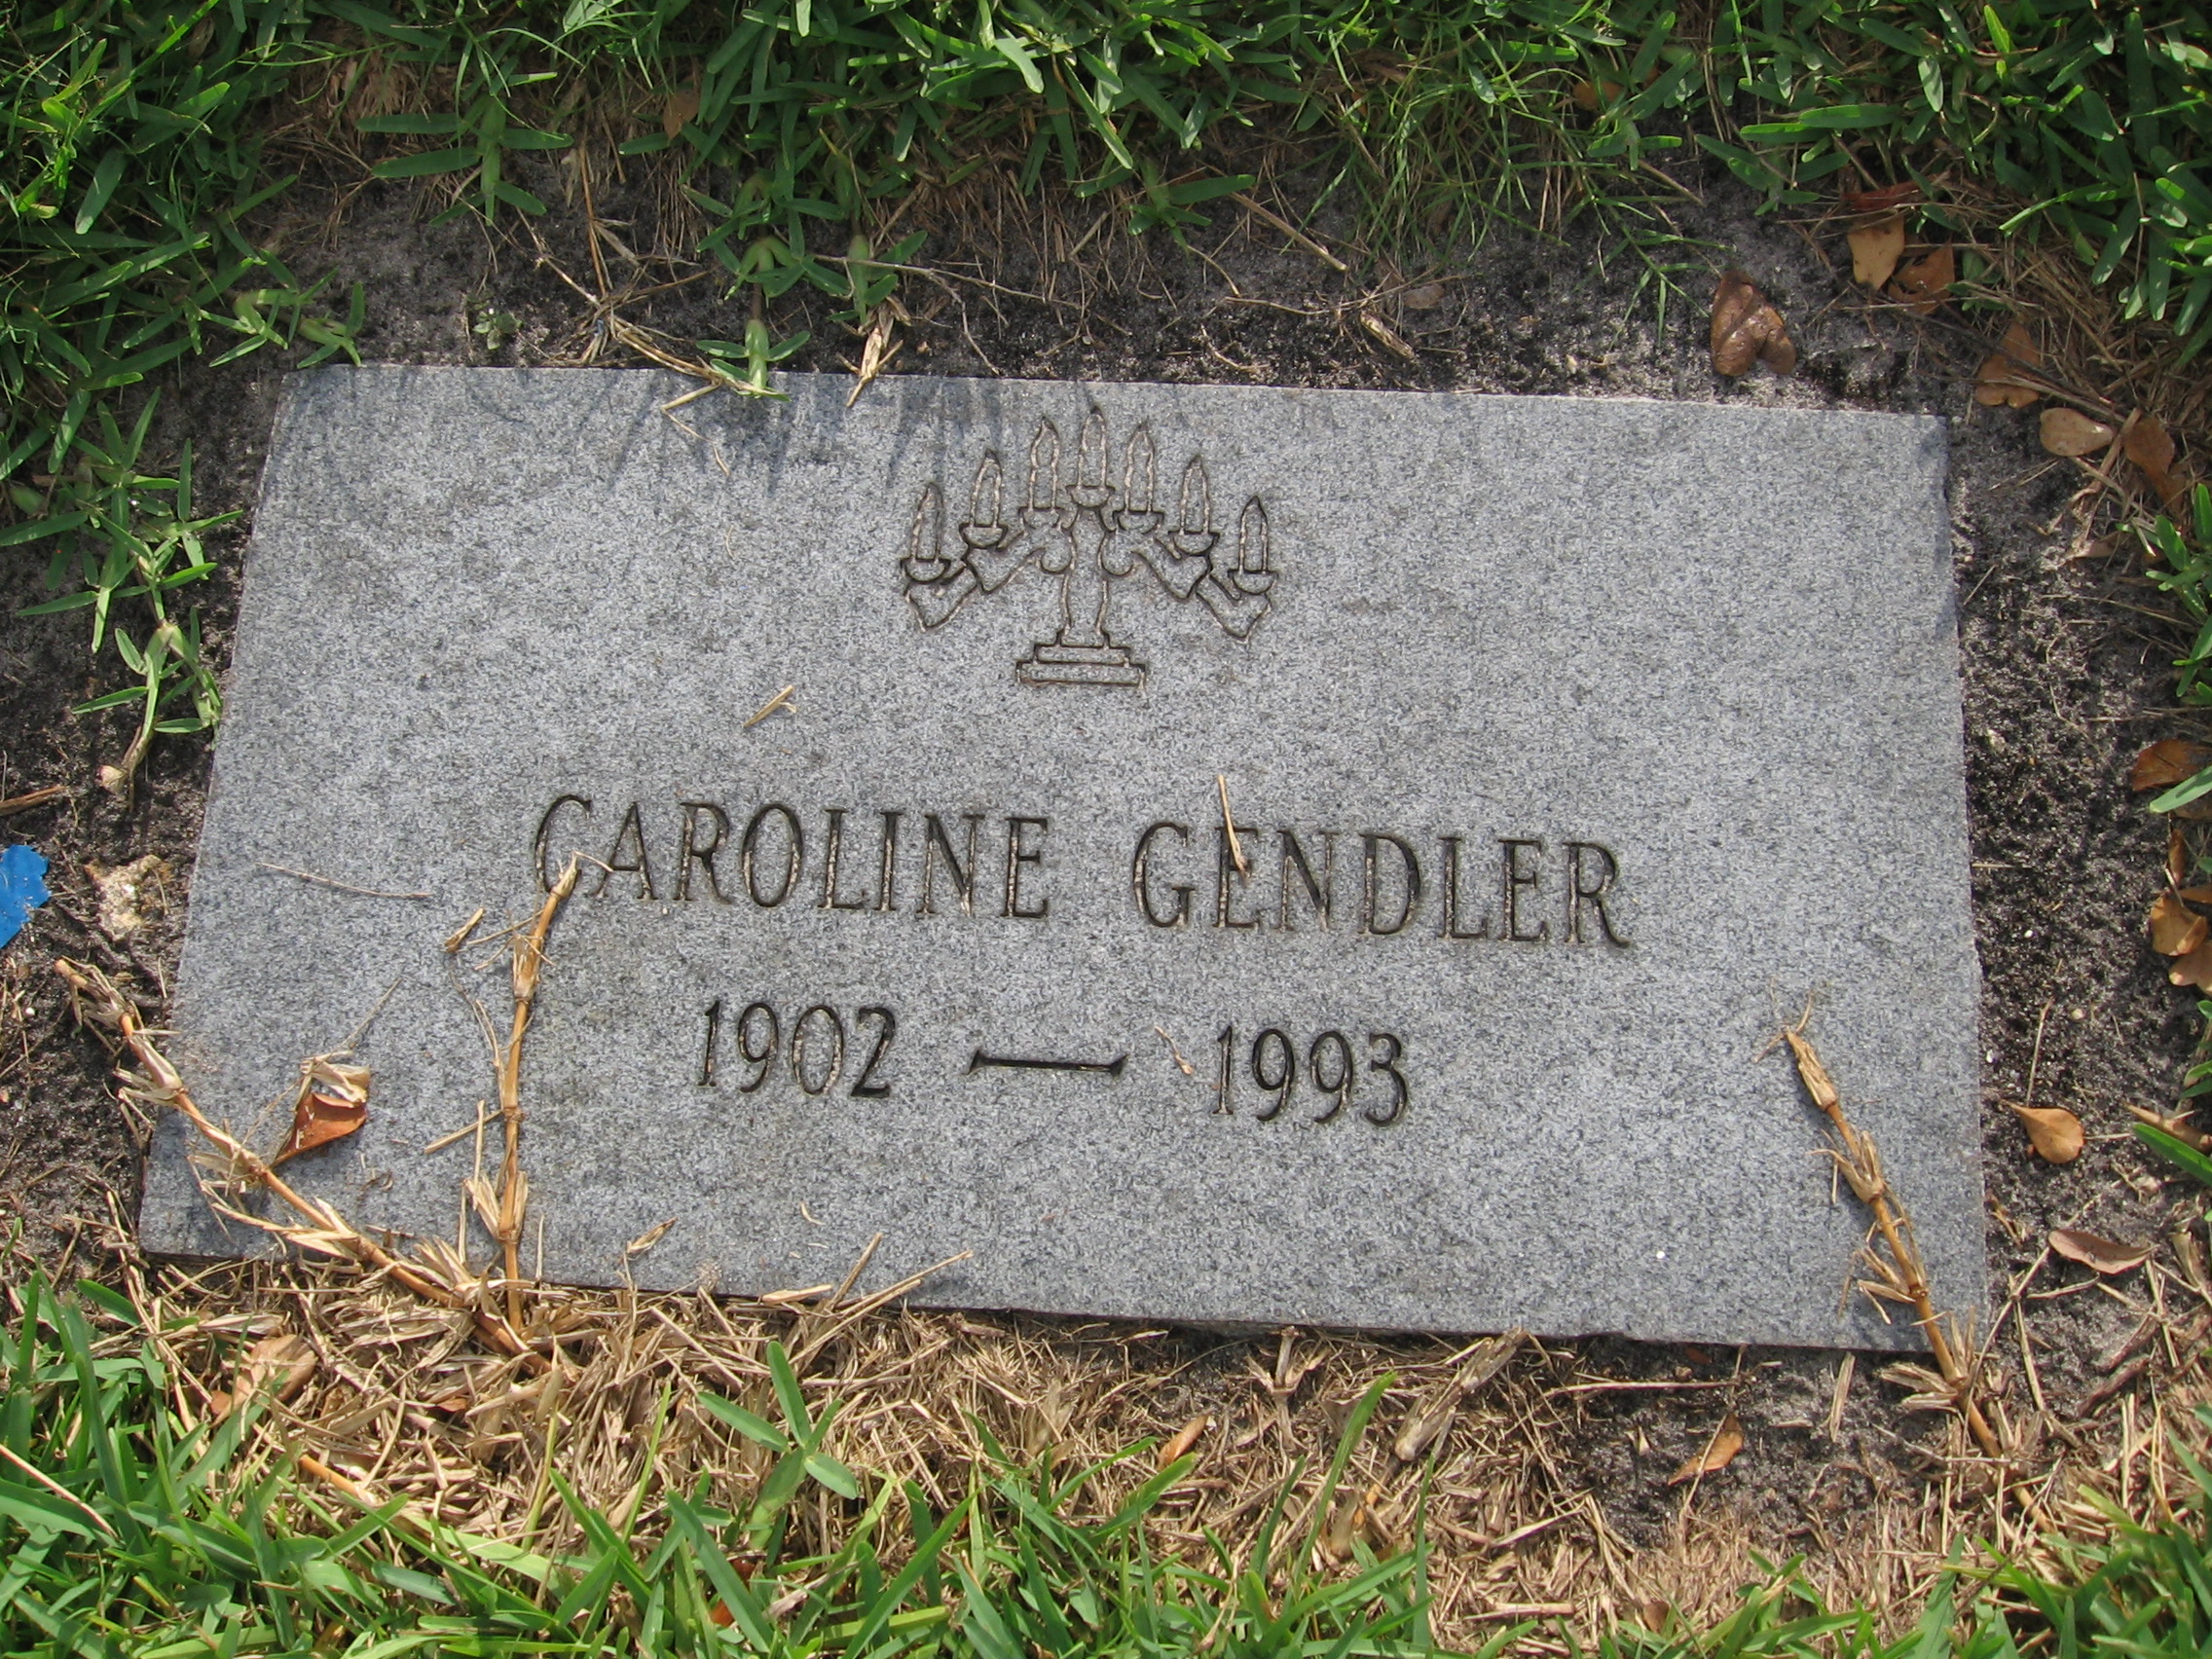 Caroline Gendler